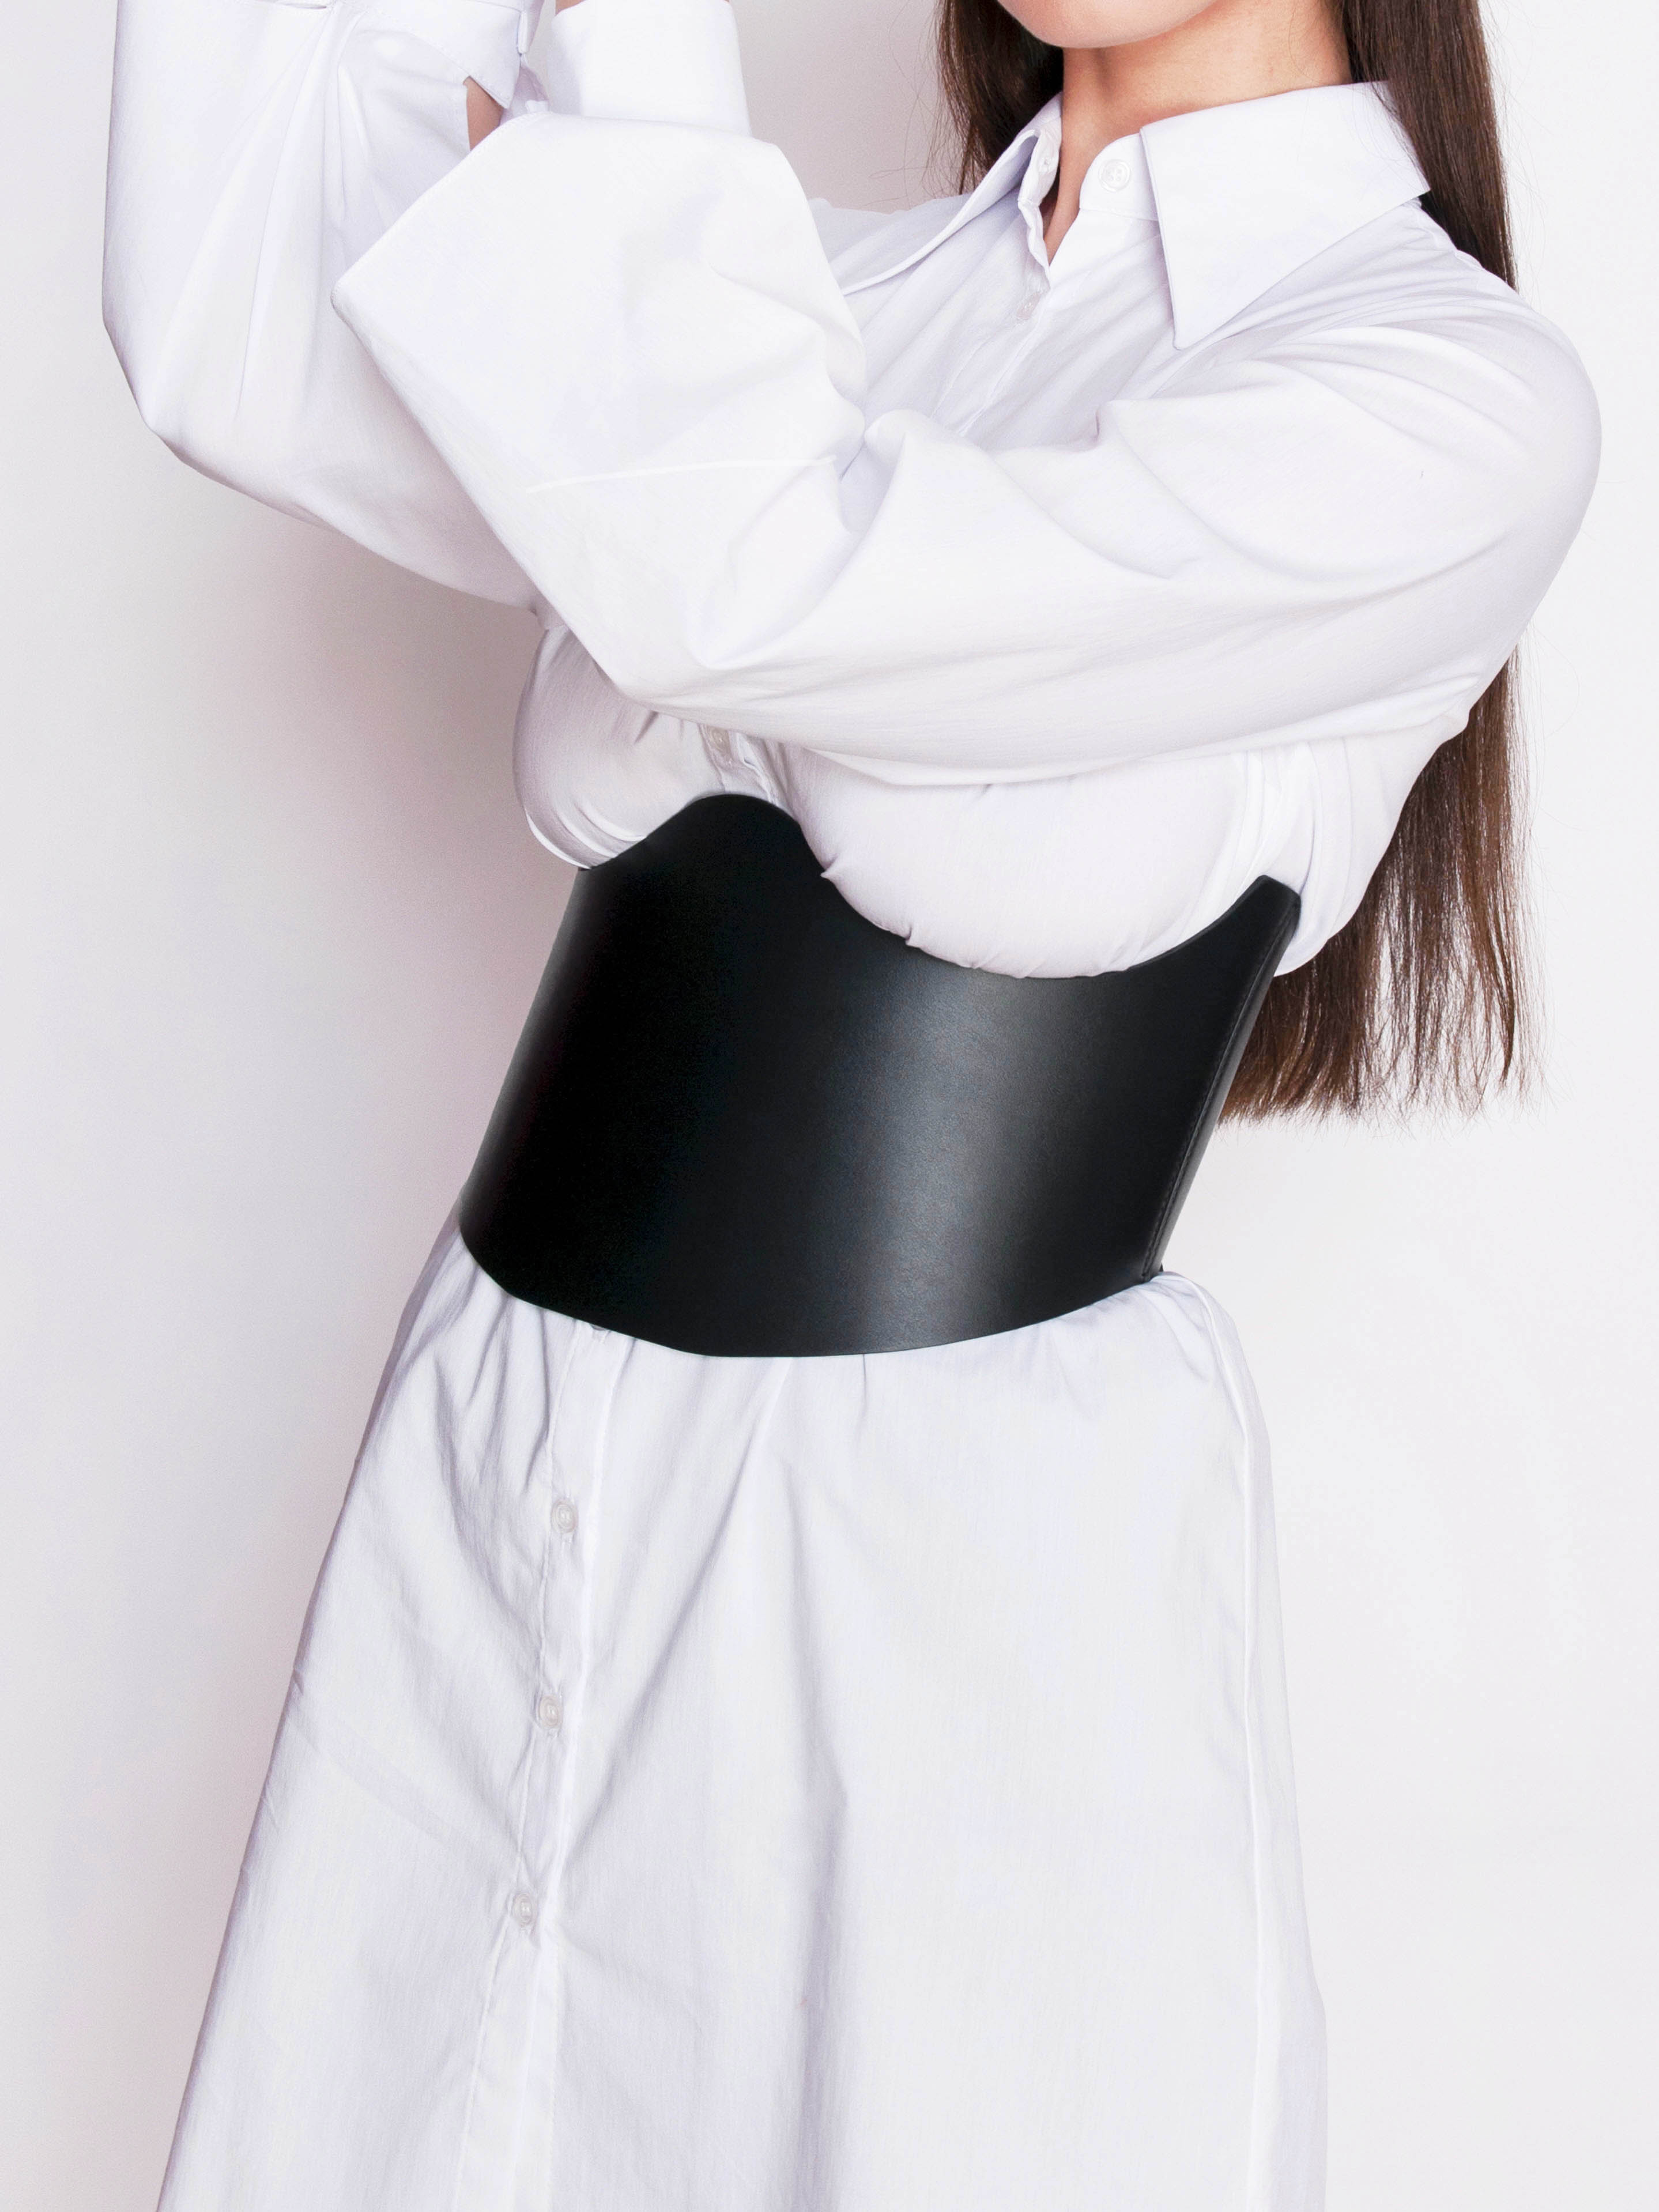 Fashion Women Corset Belts Thin Under Bust Top Underbust Corset